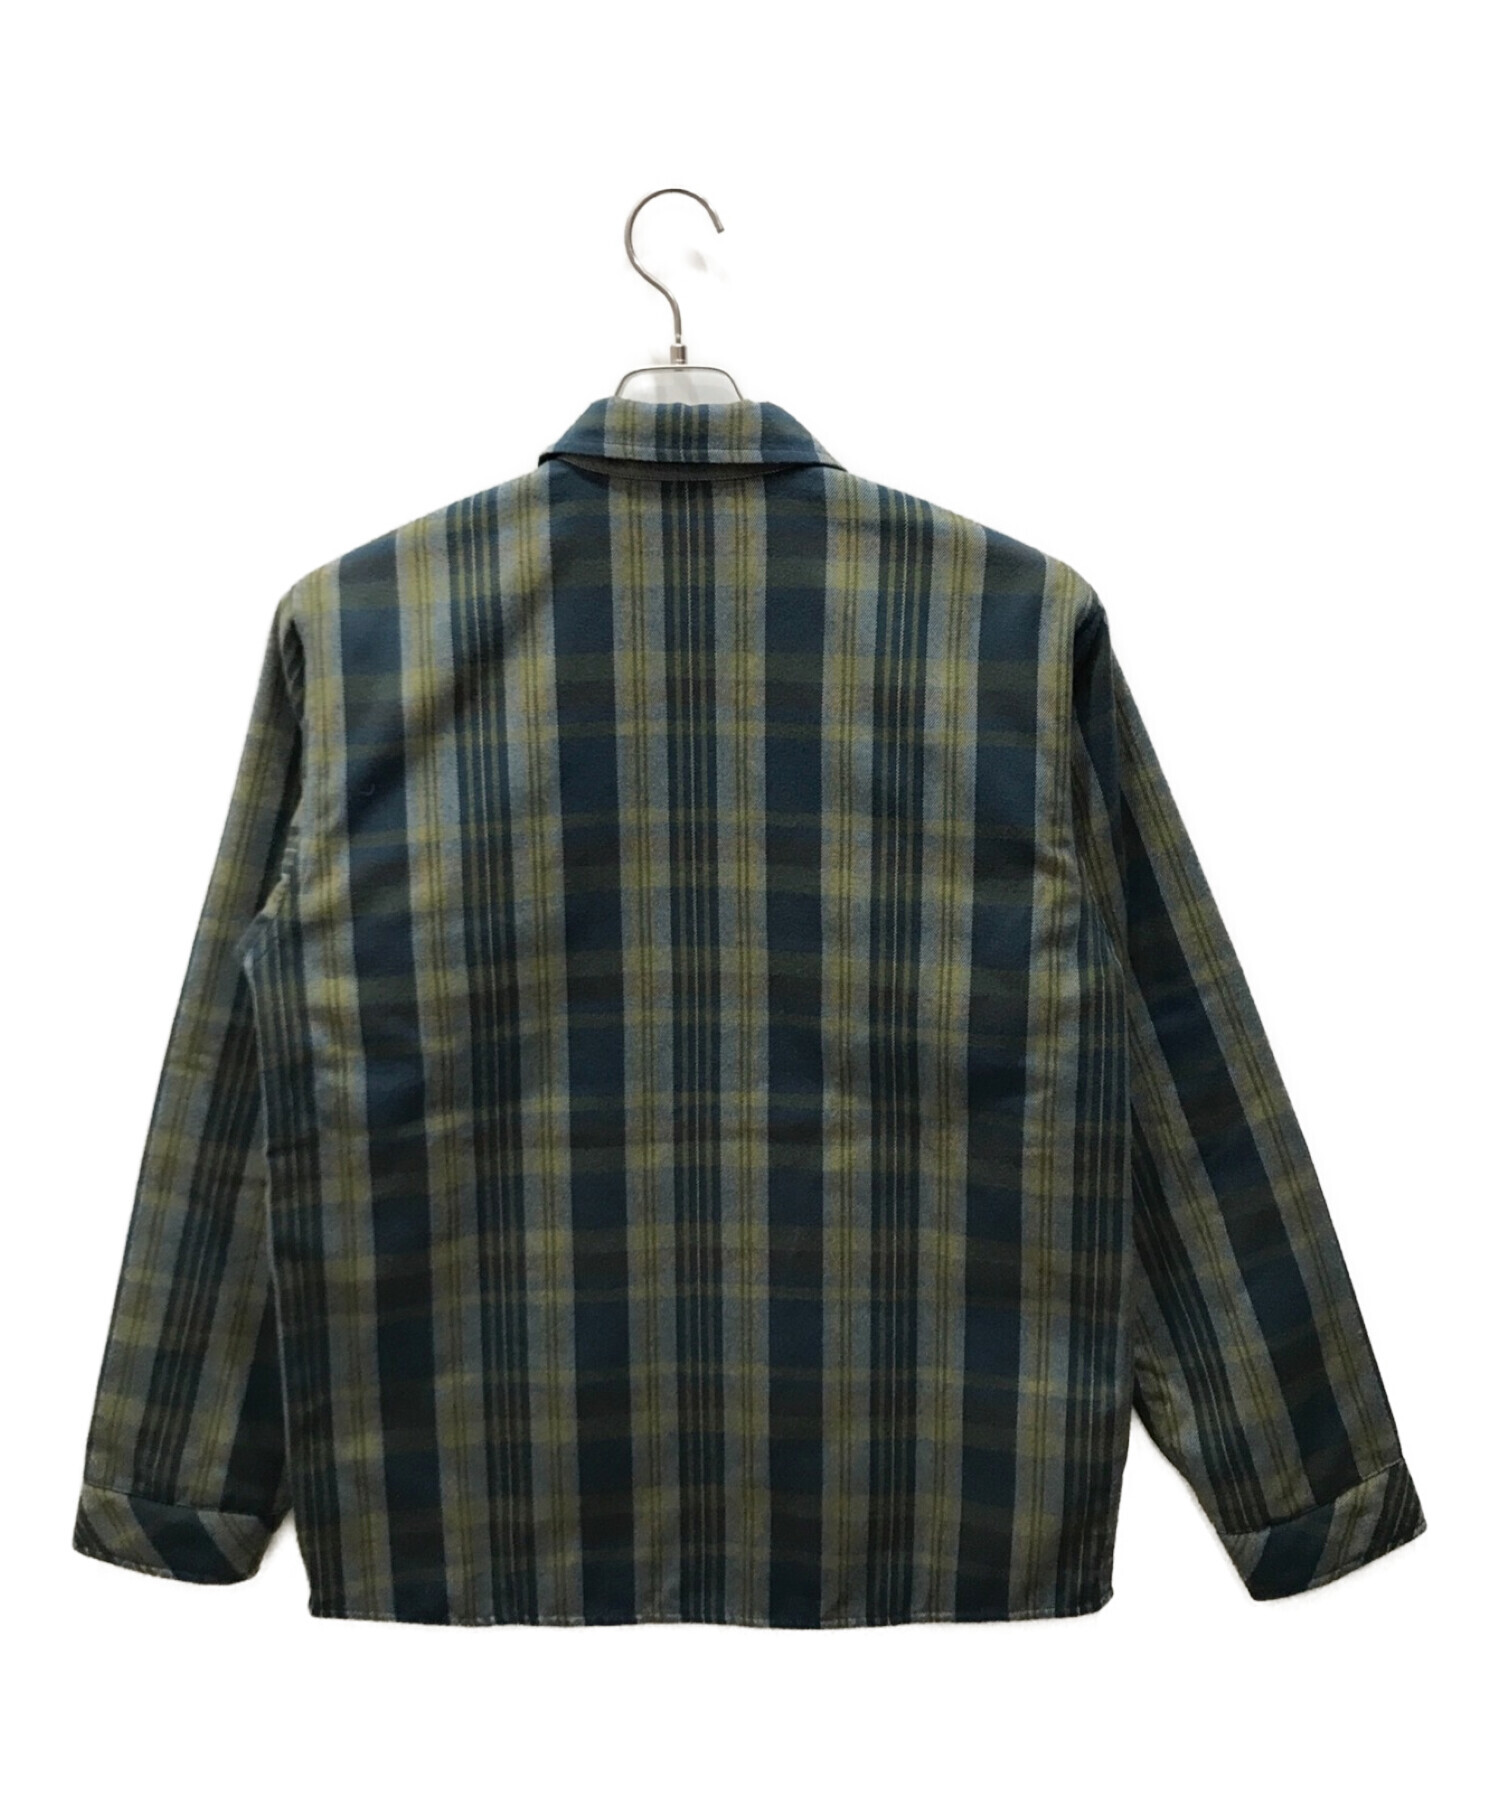 Patagonia (パタゴニア) Reversible Flannel Jacket/リバーシブルフランネルジャケット ブルー サイズ:S